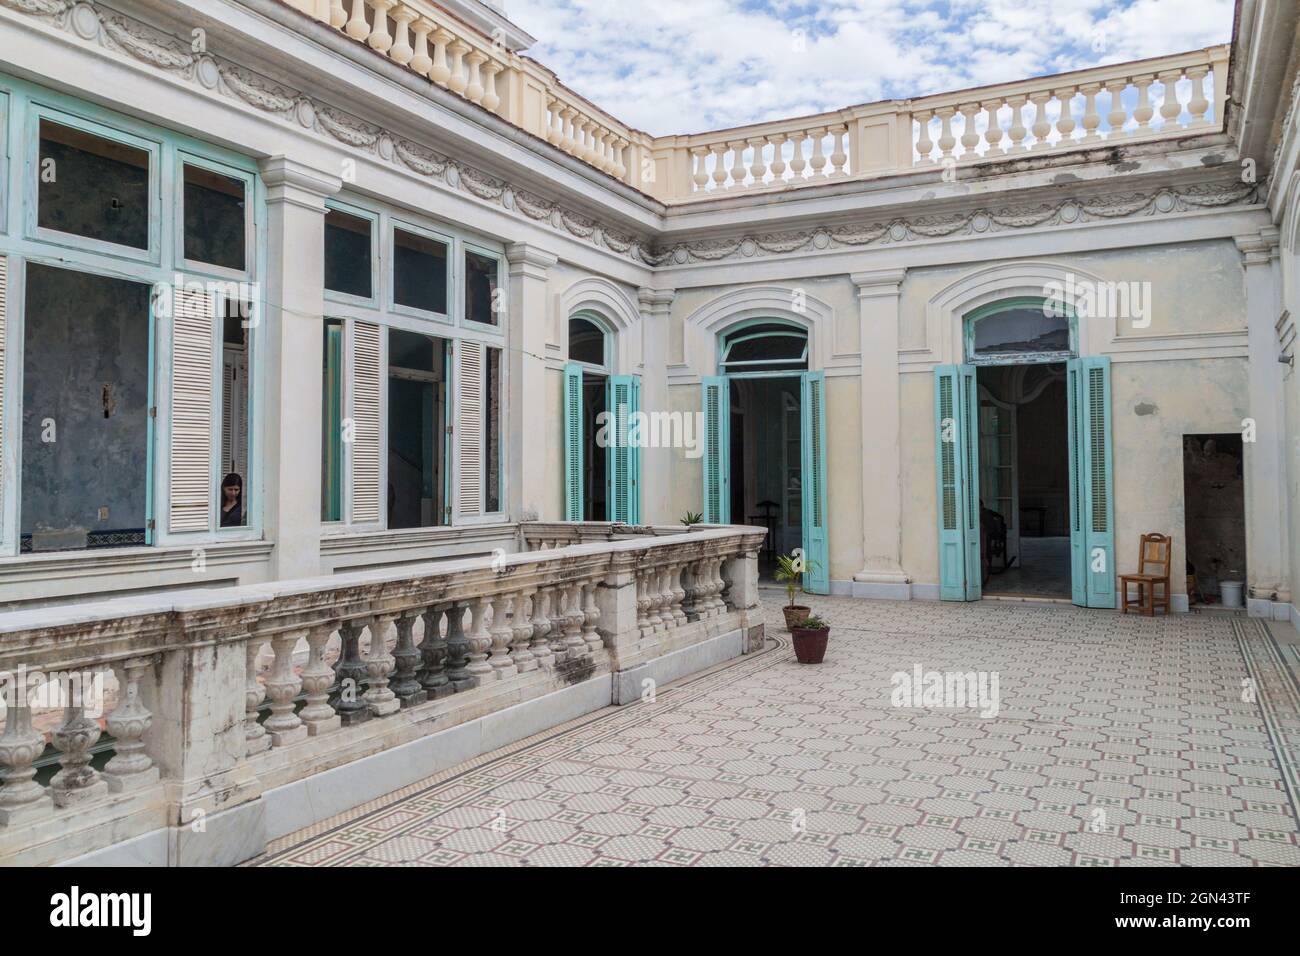 CIENFUEGOS, CUBA - FEBRUARY 11, 2016: Courtyard of Casa de la Cultura Benjamin Duarte in Cienfuegos, Cuba. Stock Photo